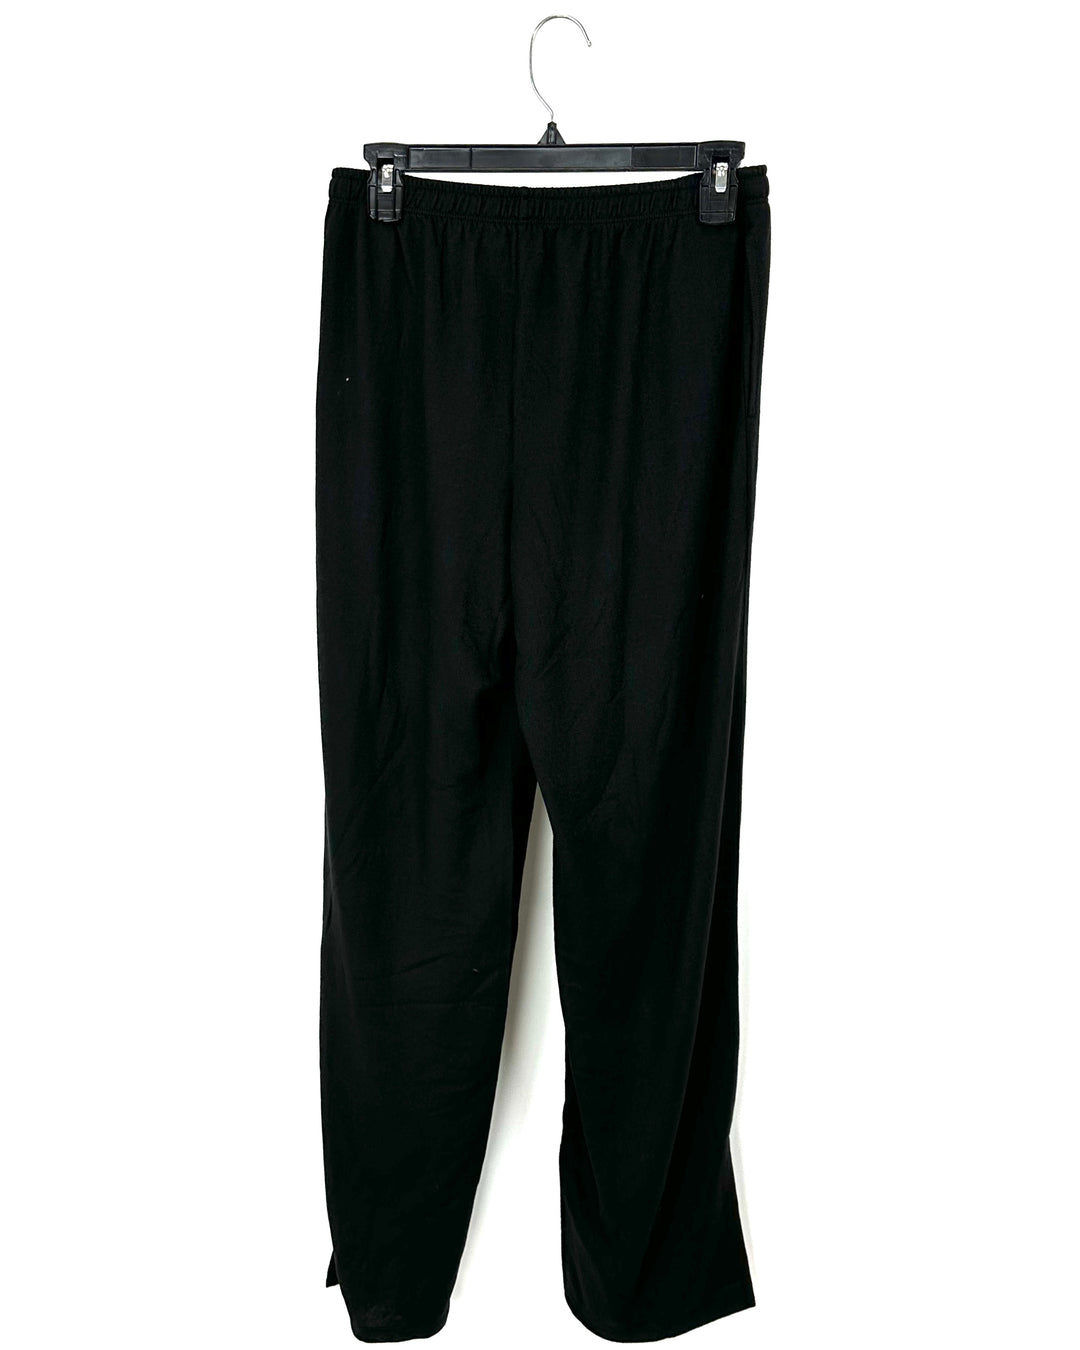 Black Pants - Size 6/8